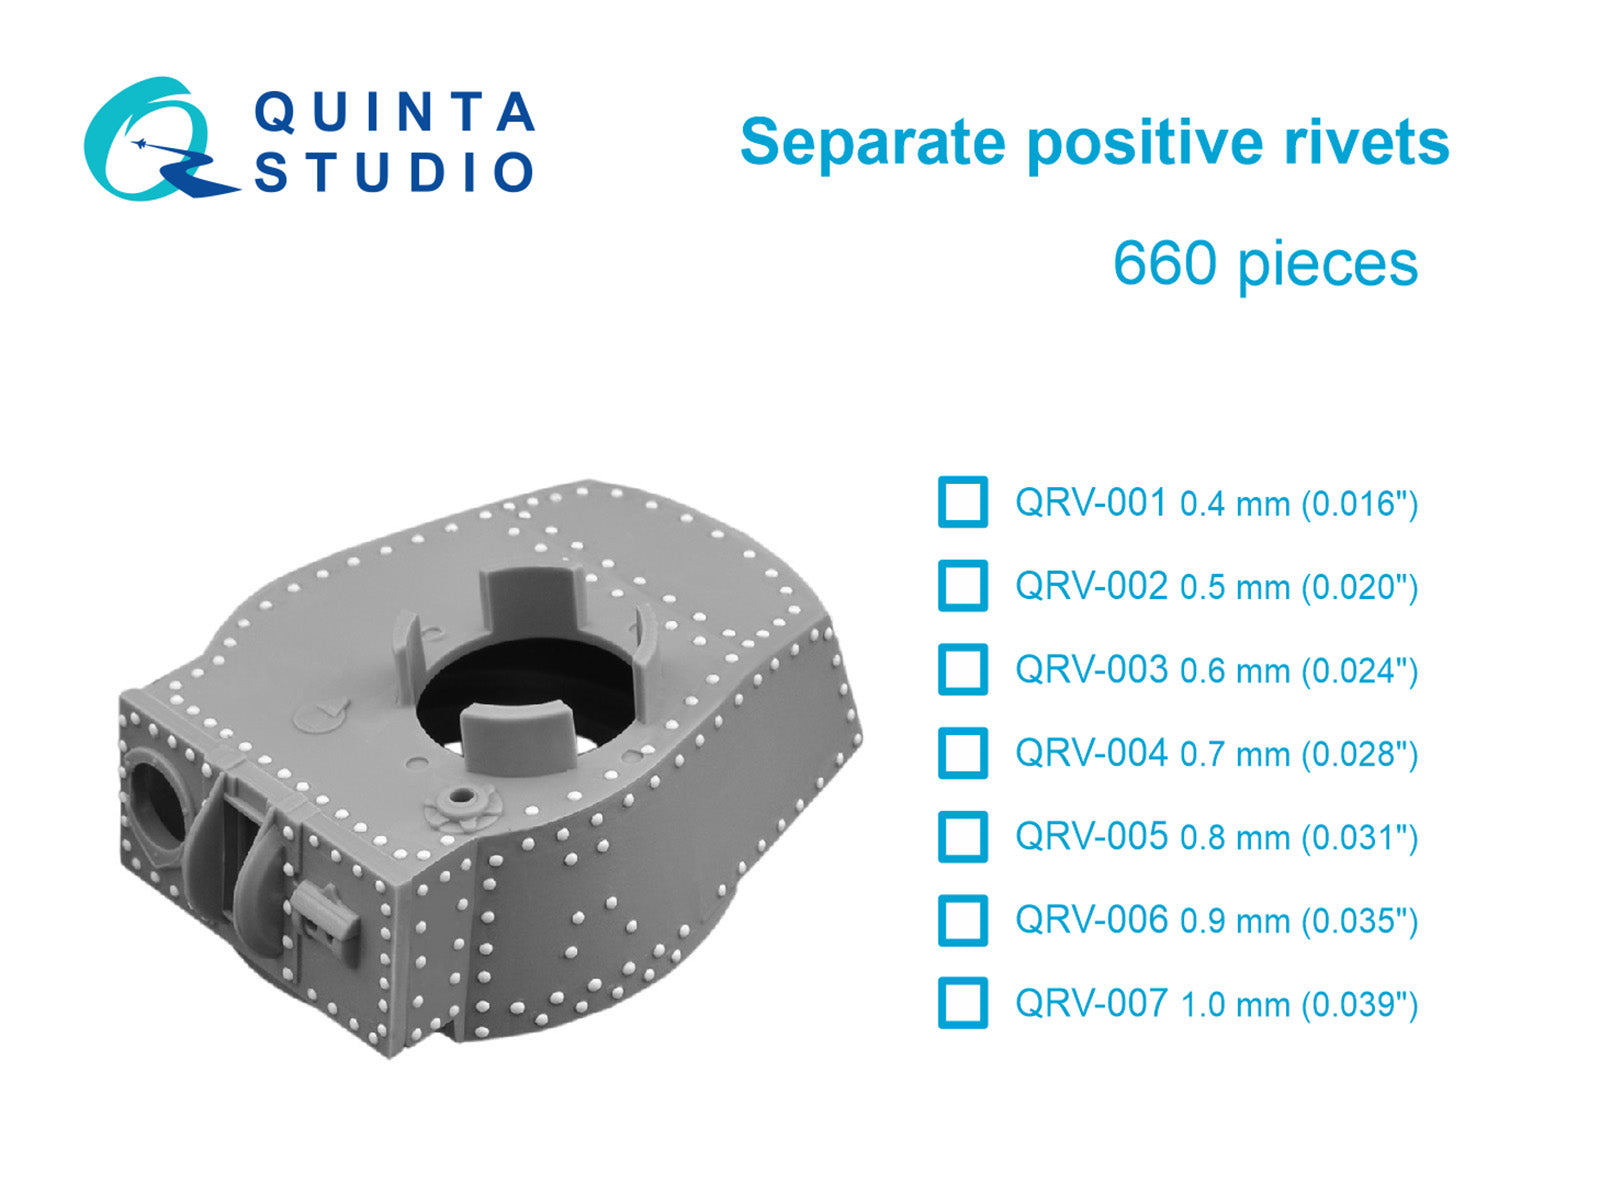 Quinta Studio - Separate positive rivets, 0.4mm (0.016") 660 pcs QRV-001